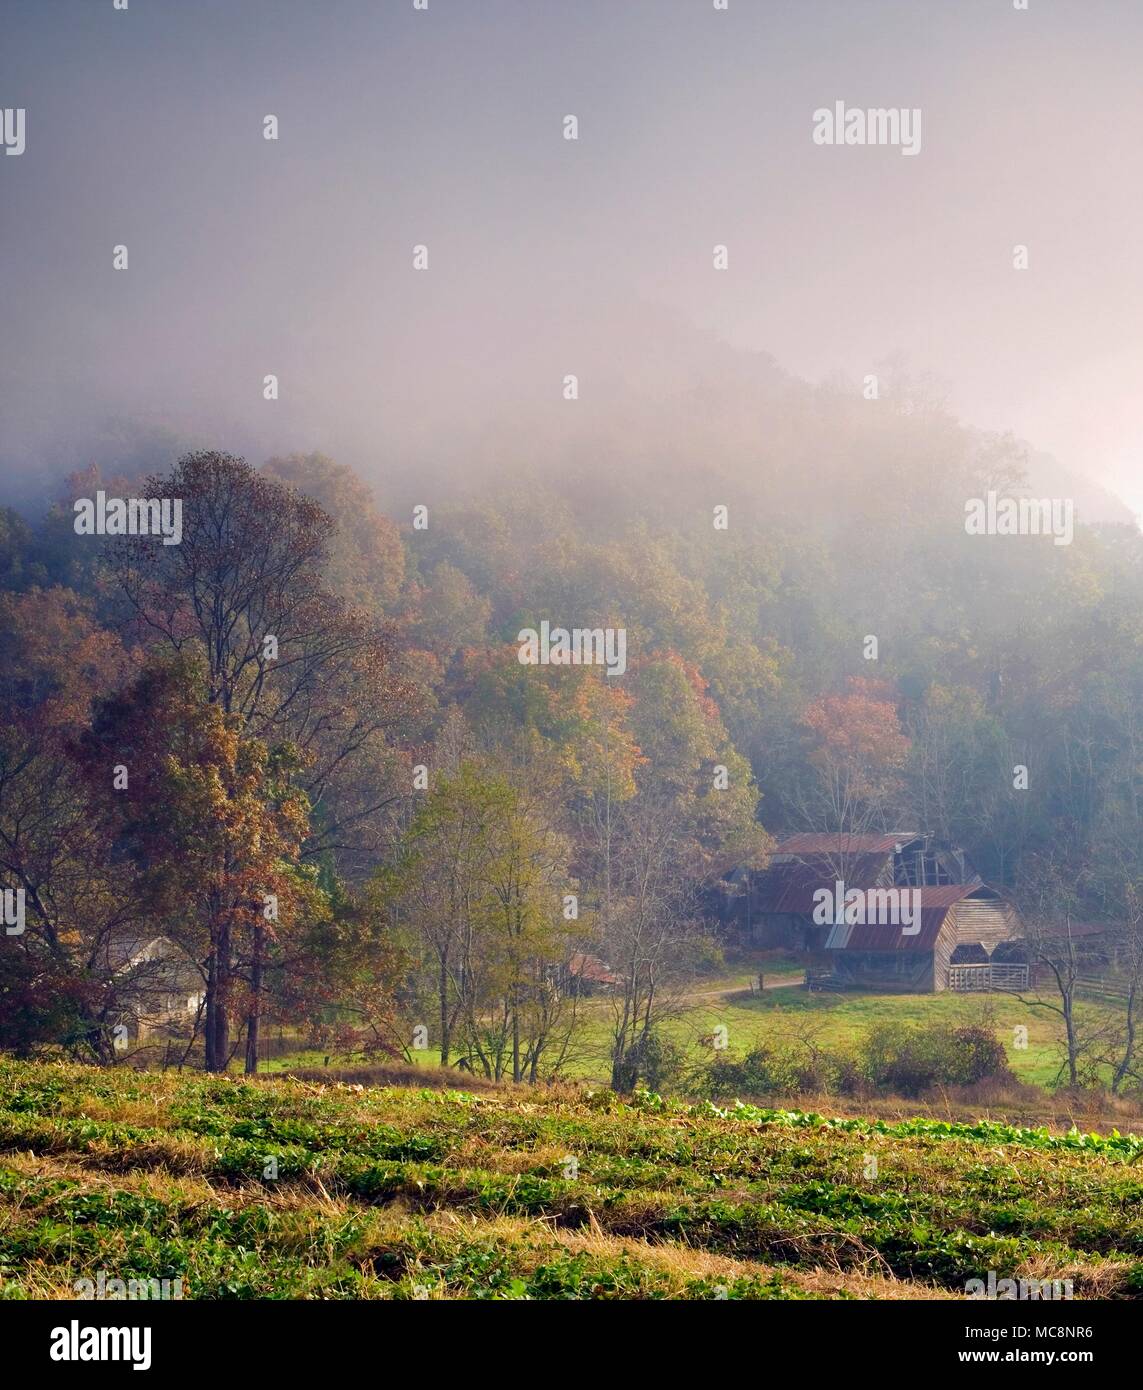 Am nächsten Morgen einen frühen Blick auf einem nebligen Landschaft in Oak Grove, North Carolina, USA. Stockfoto